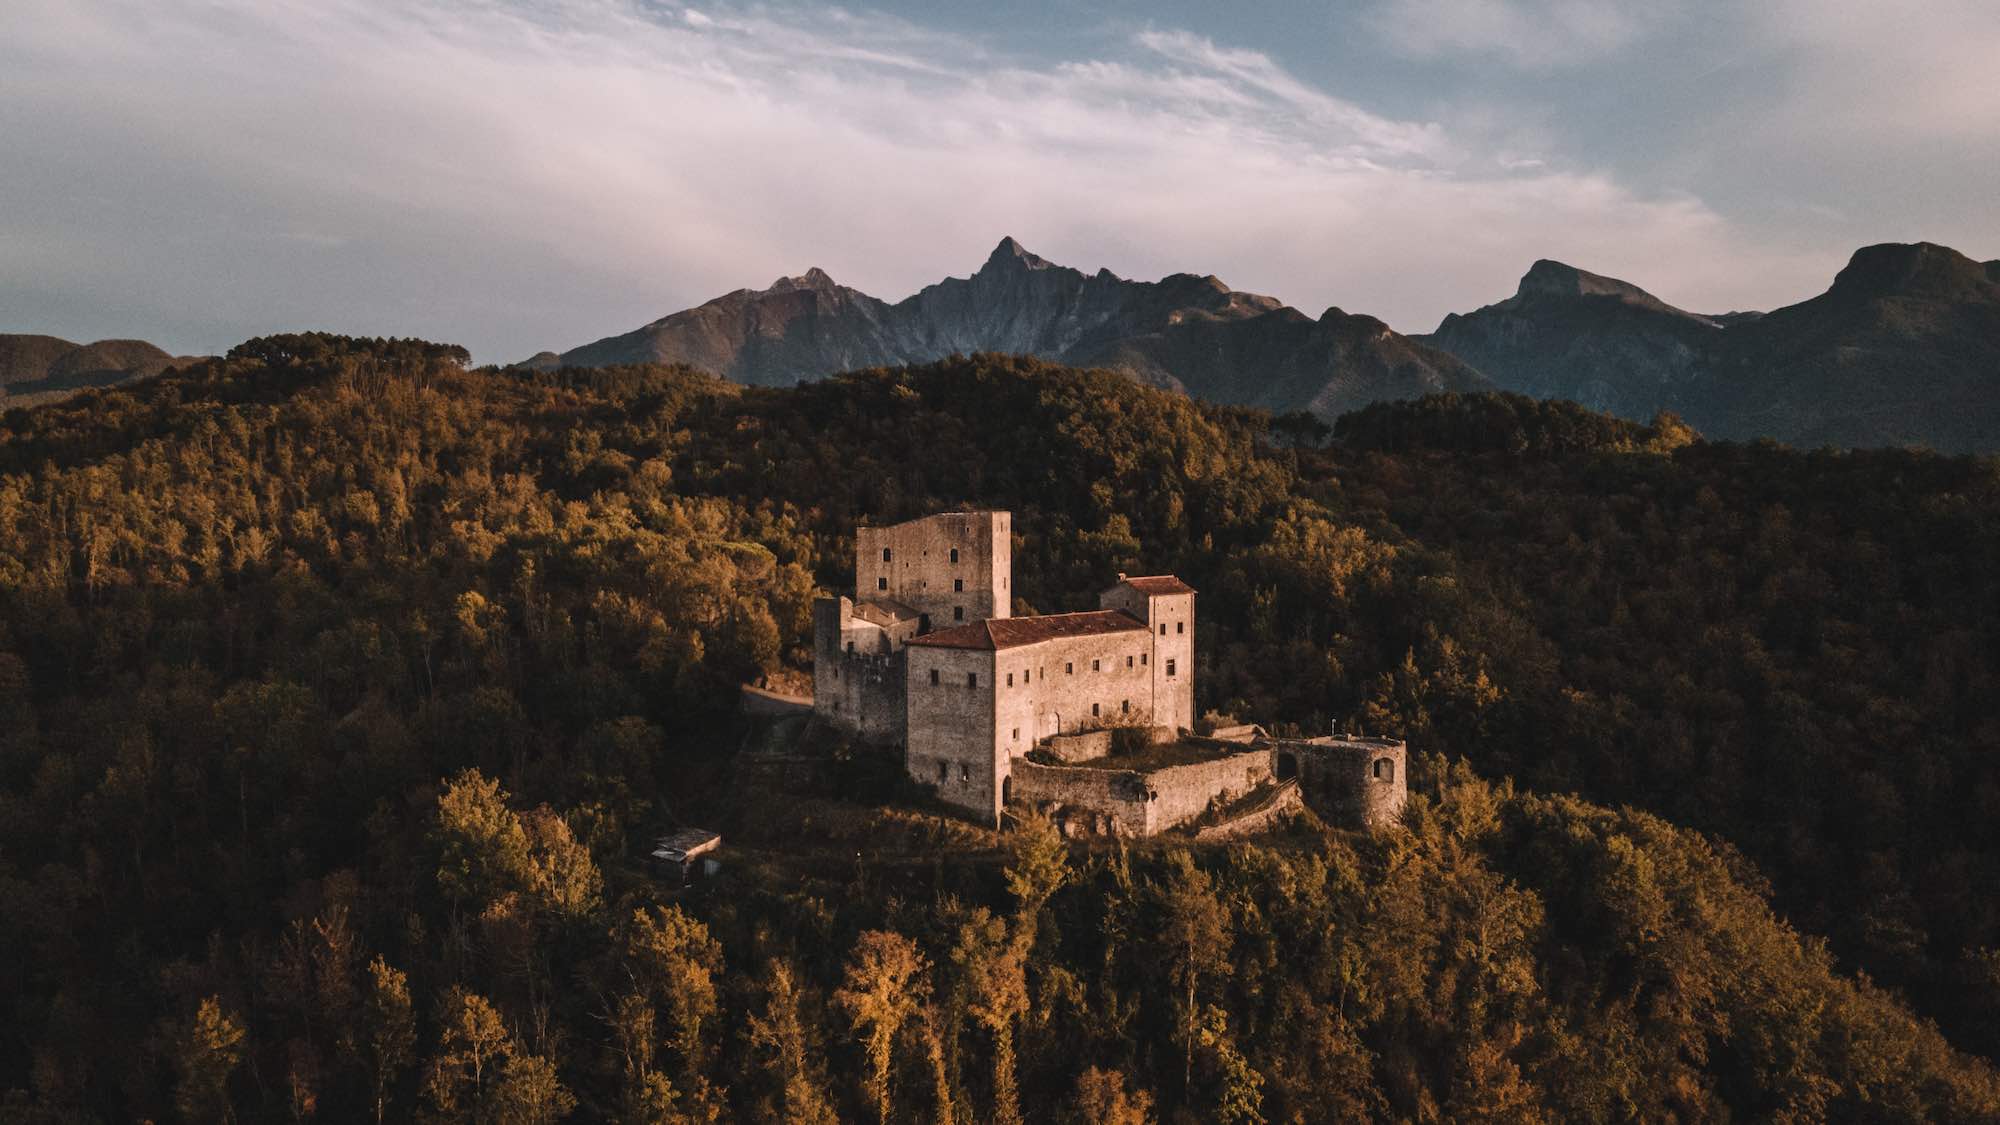 Castello di Fivizzano, uno dei tanti castelli della Lunigiana, Toscana